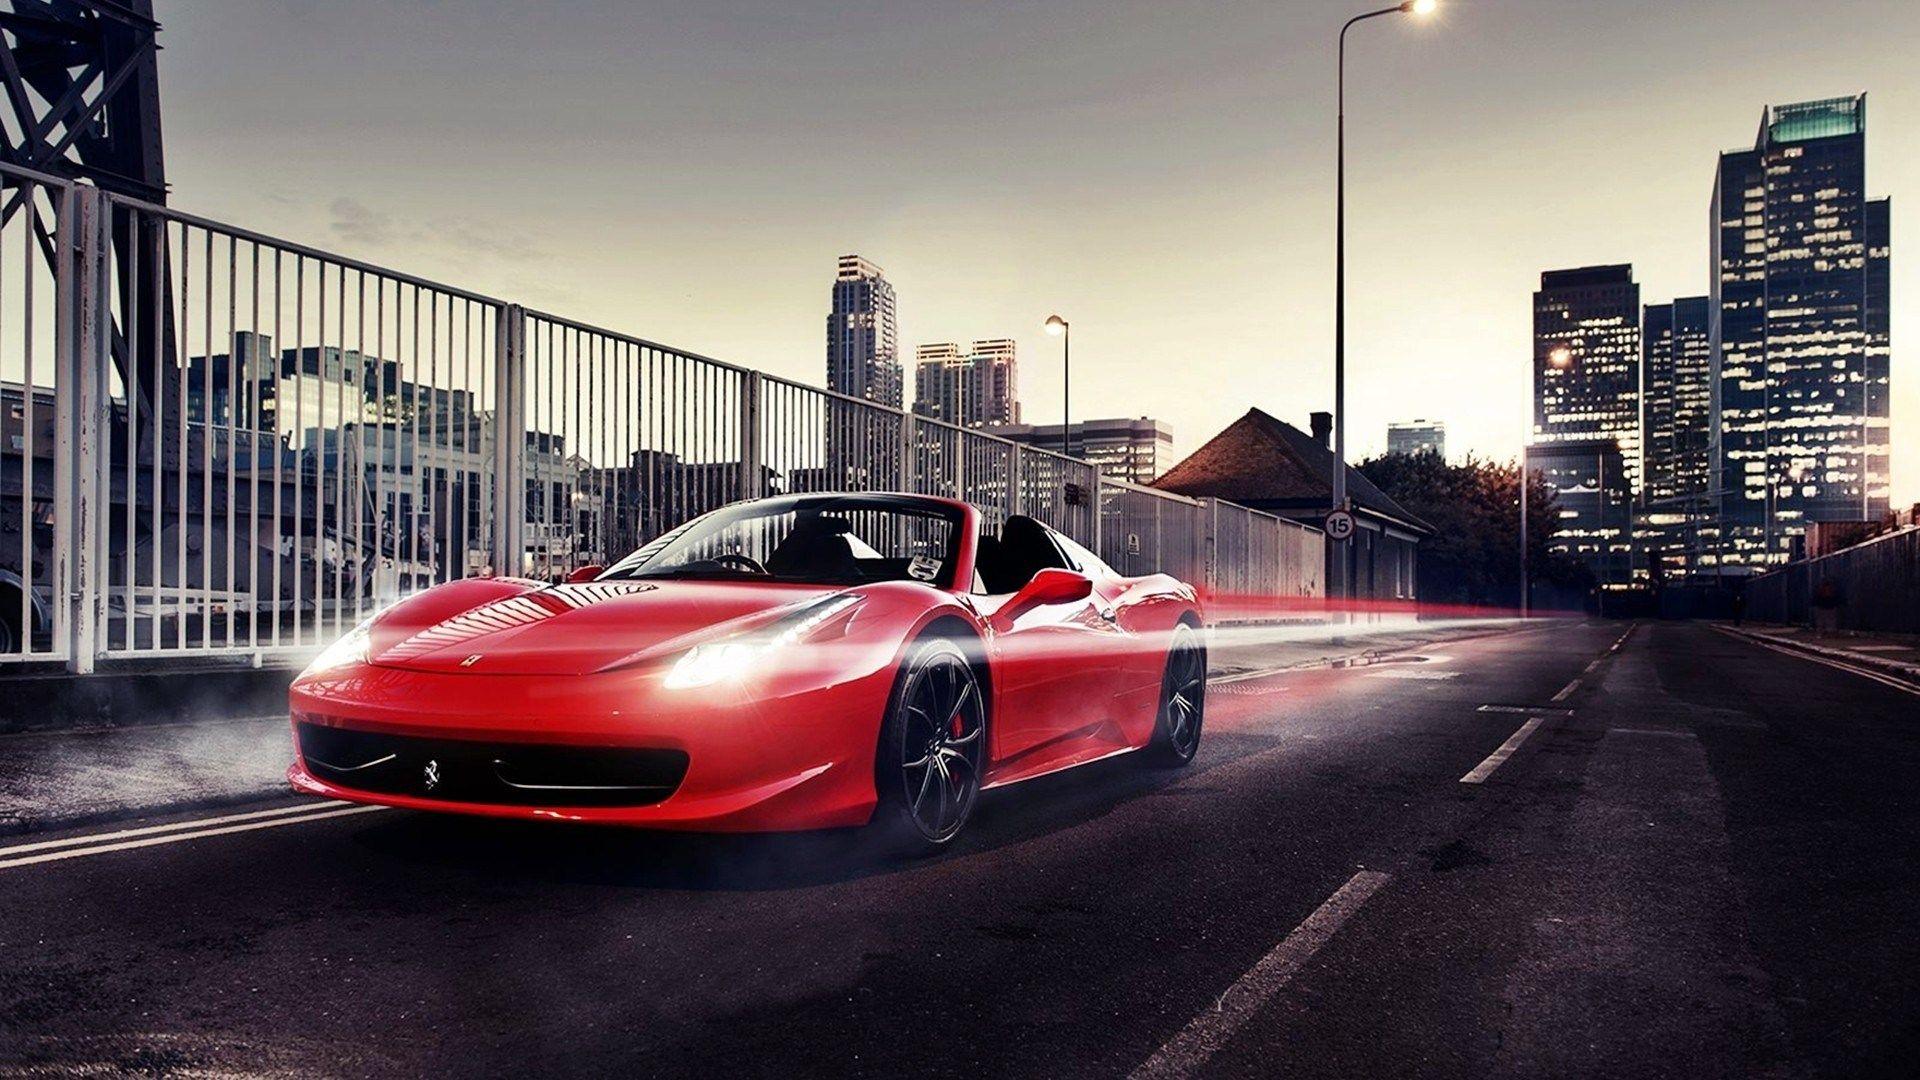 Ferrari Wallpaper 458 1080p. Vehicles Wallpaper